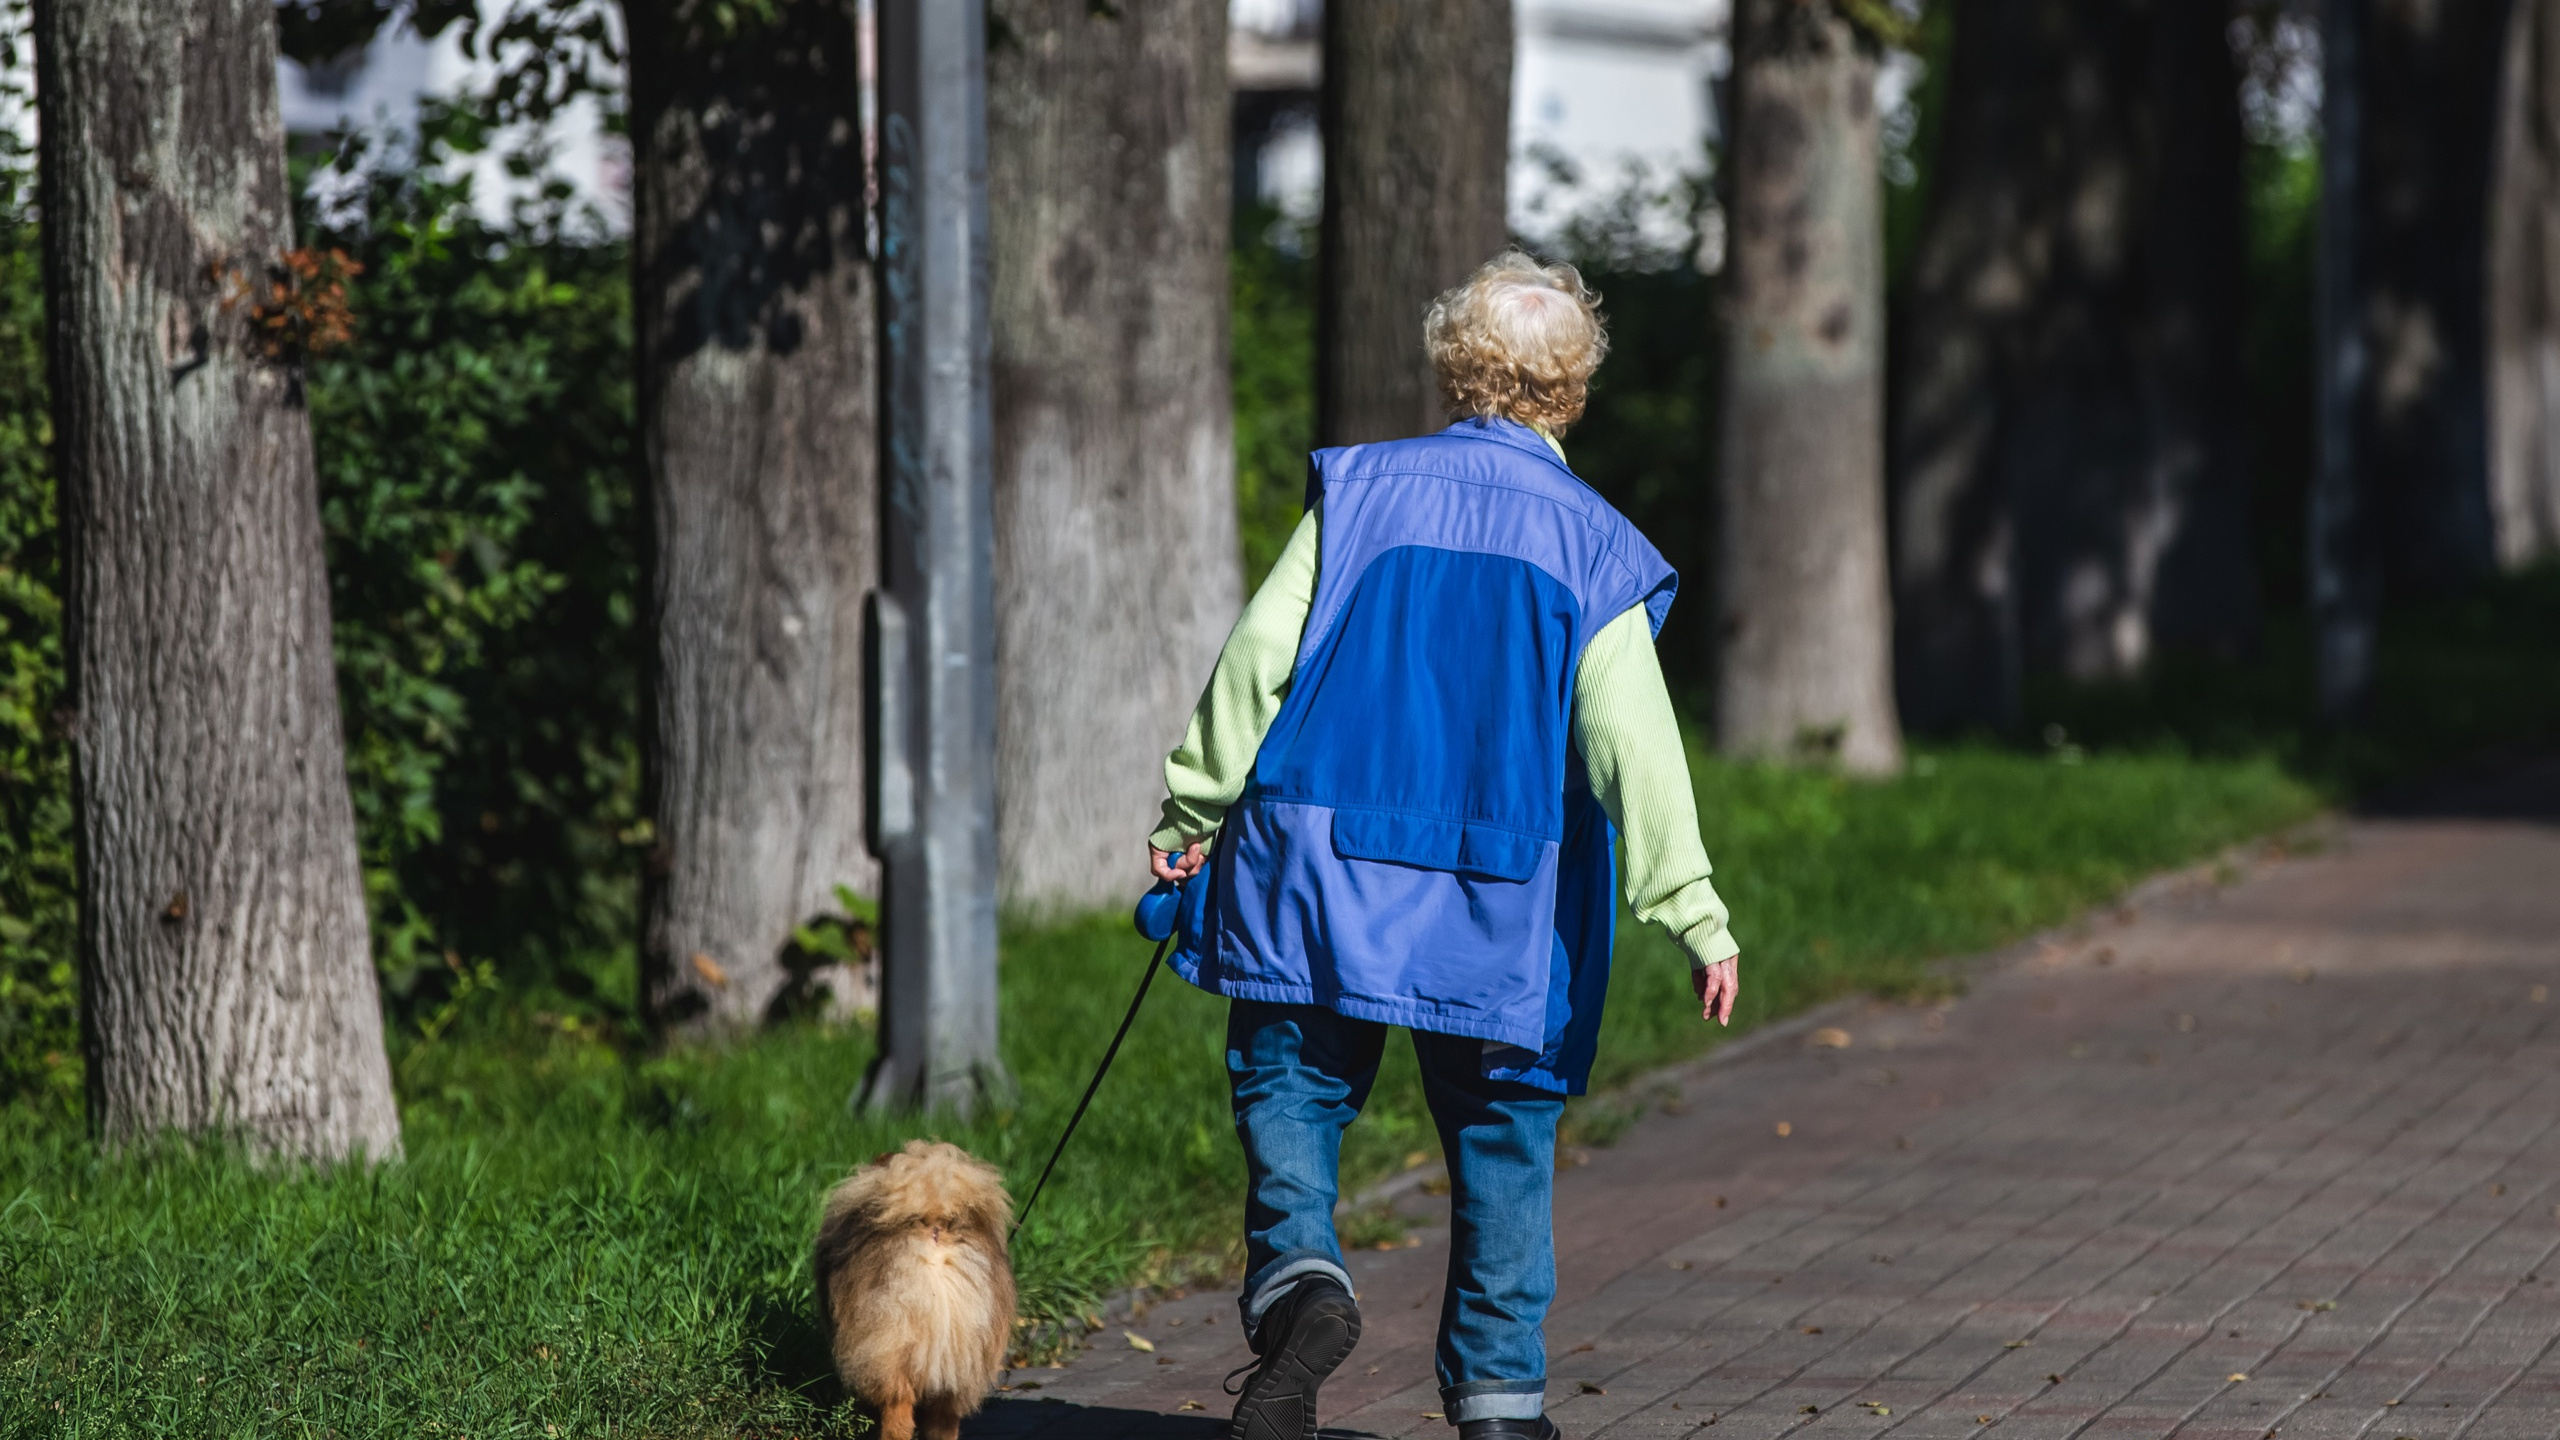 Ярославцев будут штрафовать за неправильный выгул собак: законопроект внесен в думу